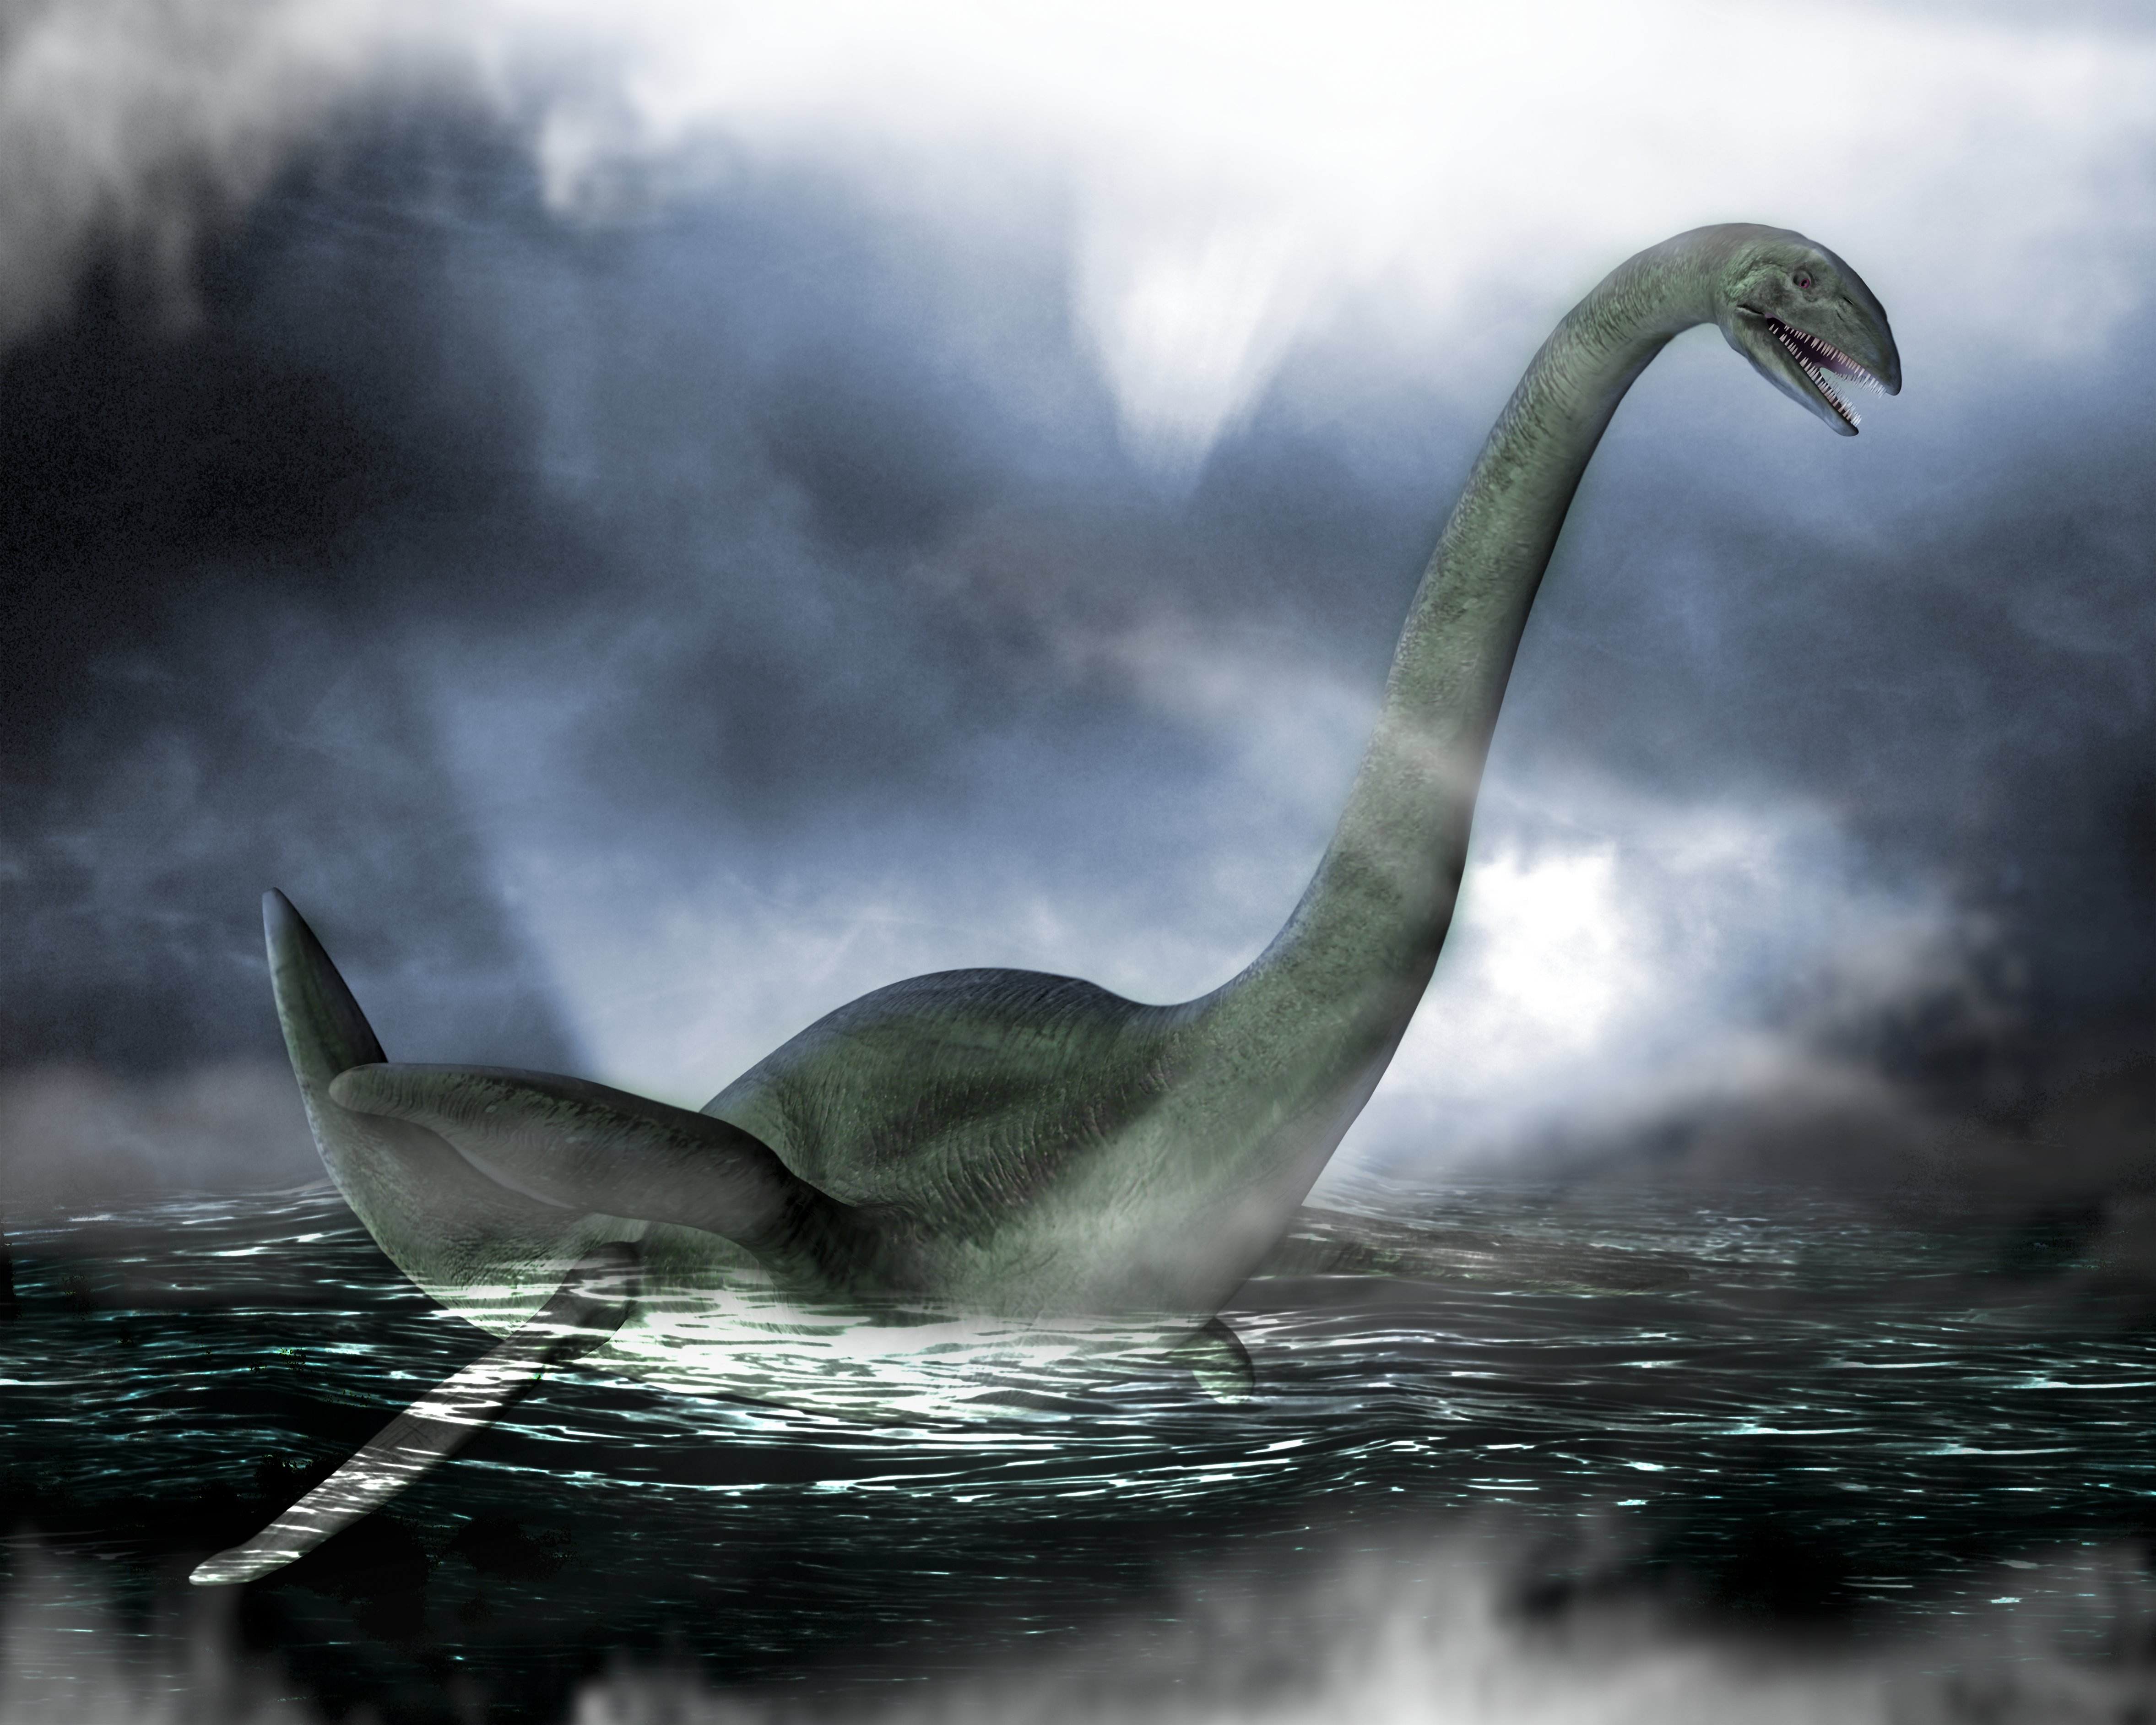 Impresión artística del Monstruo del Lago Ness, basada en Elasmosaurus, una especie de plesiosaurio y reptil marino prehistórico